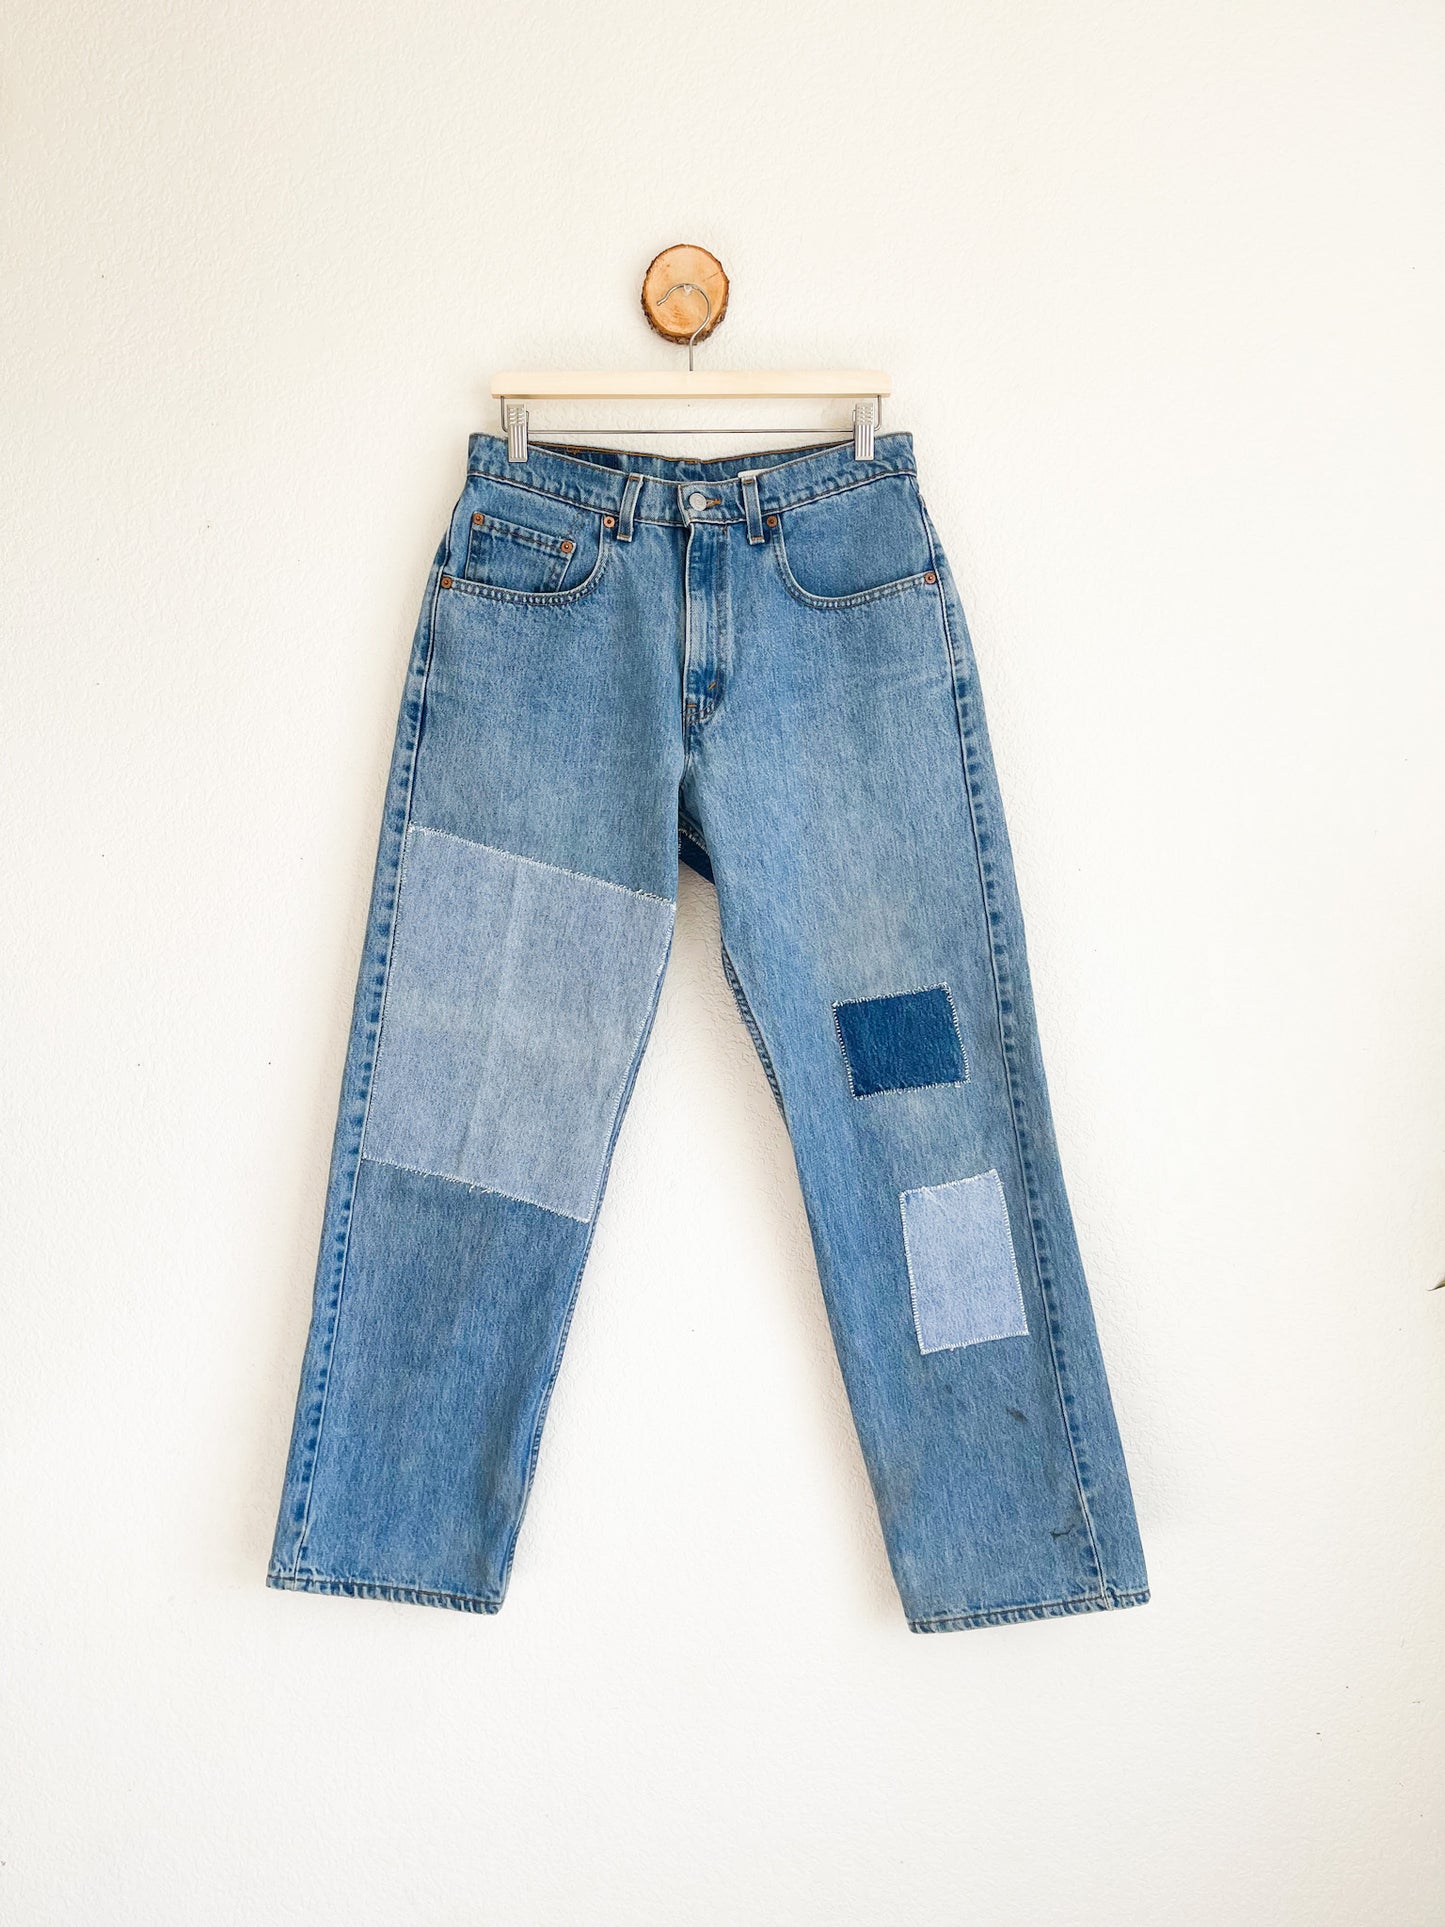 Vintage Levi's Jeans with Denim Patchwork Detail - 32" Waist